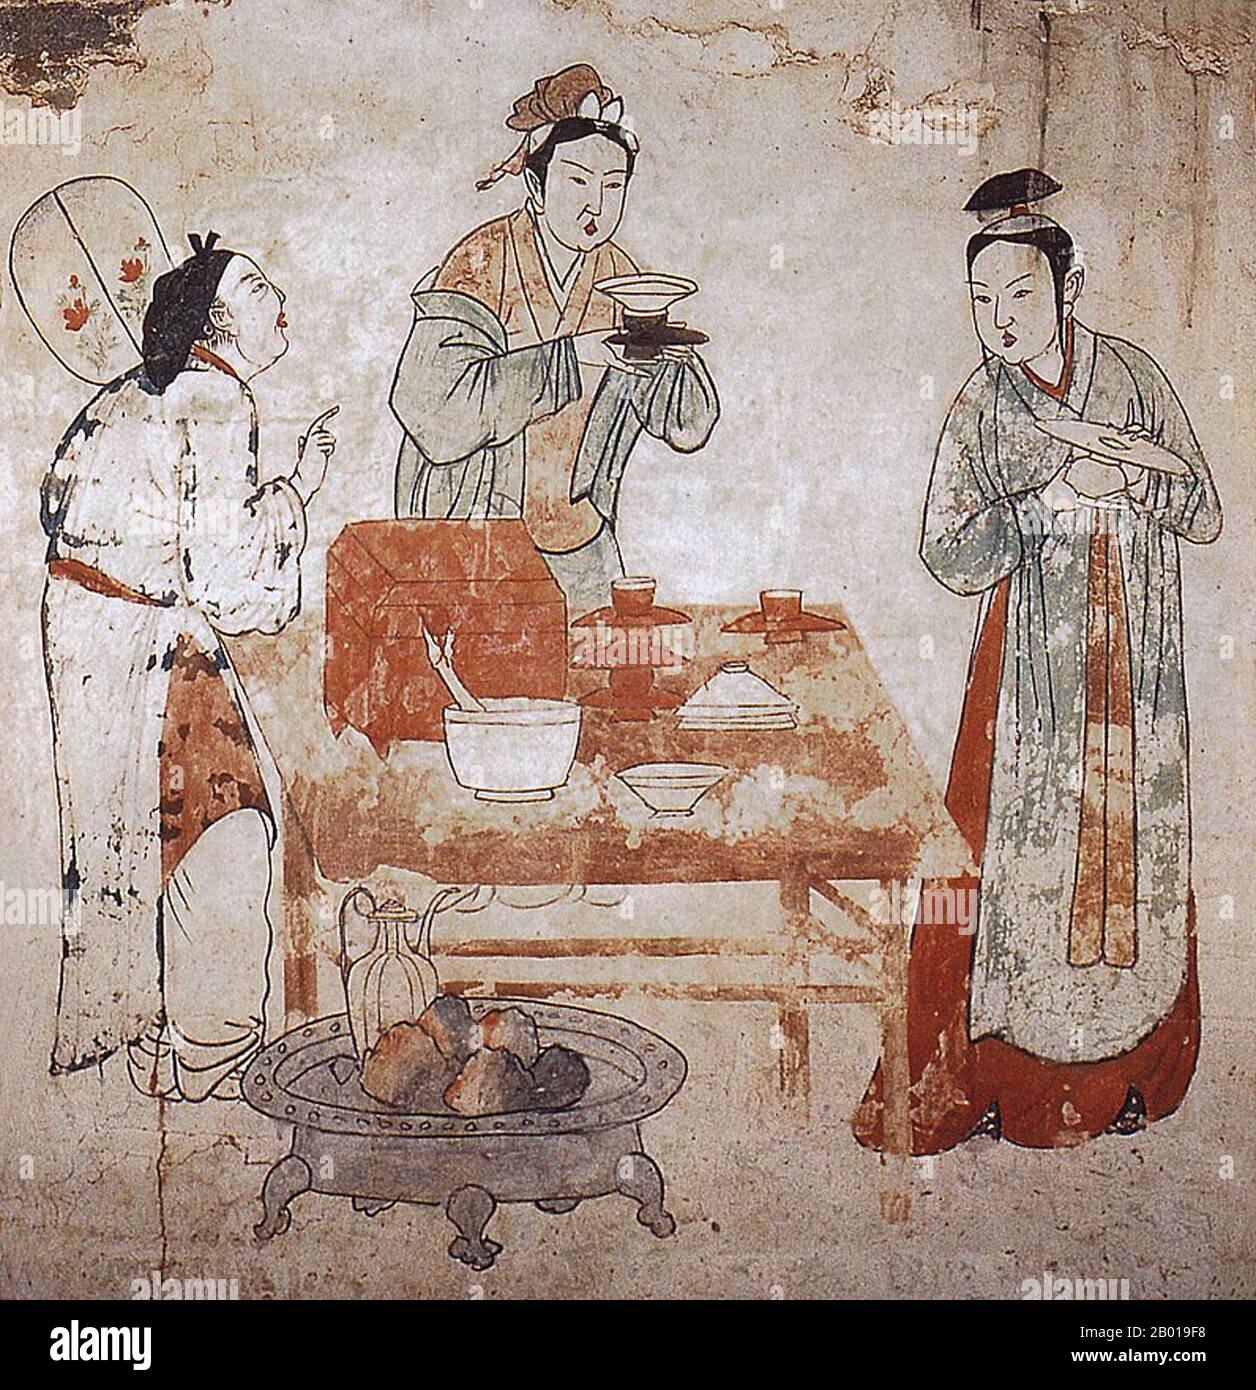 Cina: Tre donne che preparano il tè in un murale nella tomba di Zhang Shigu, Xuanhua, Hebei, Dinastia Liao (1093-1117). La dinastia di Liao, conosciuta anche come l'Impero Khitan, era uno stato che dominava le regioni di Manciuria, Mongolia, e parti della Cina settentrionale propriamente detta. Fu fondata dal clan Yelü del popolo Khitano nello stesso anno in cui la dinastia Tang crollò (907), anche se il suo primo sovrano, Yelü Abaoji (Yaruud Ambagai Khan), non dichiarò un nome di epoca fino al 916. Foto Stock